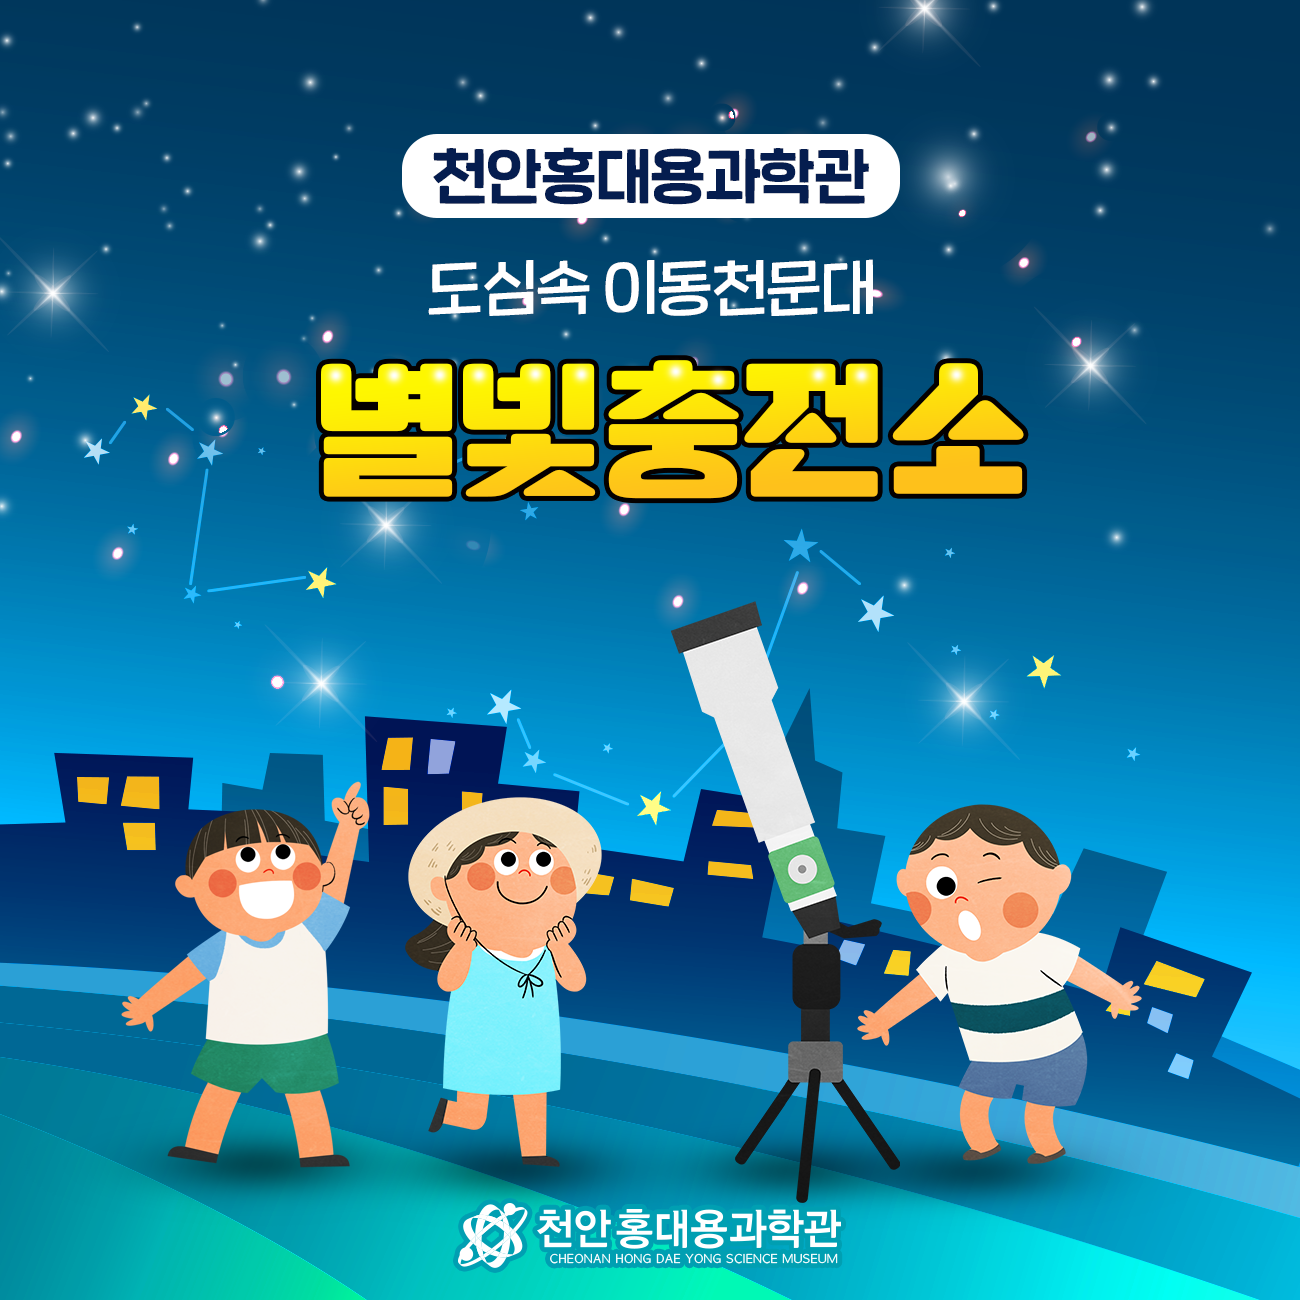 천안 홍대용 과학관 <별빛충전소>